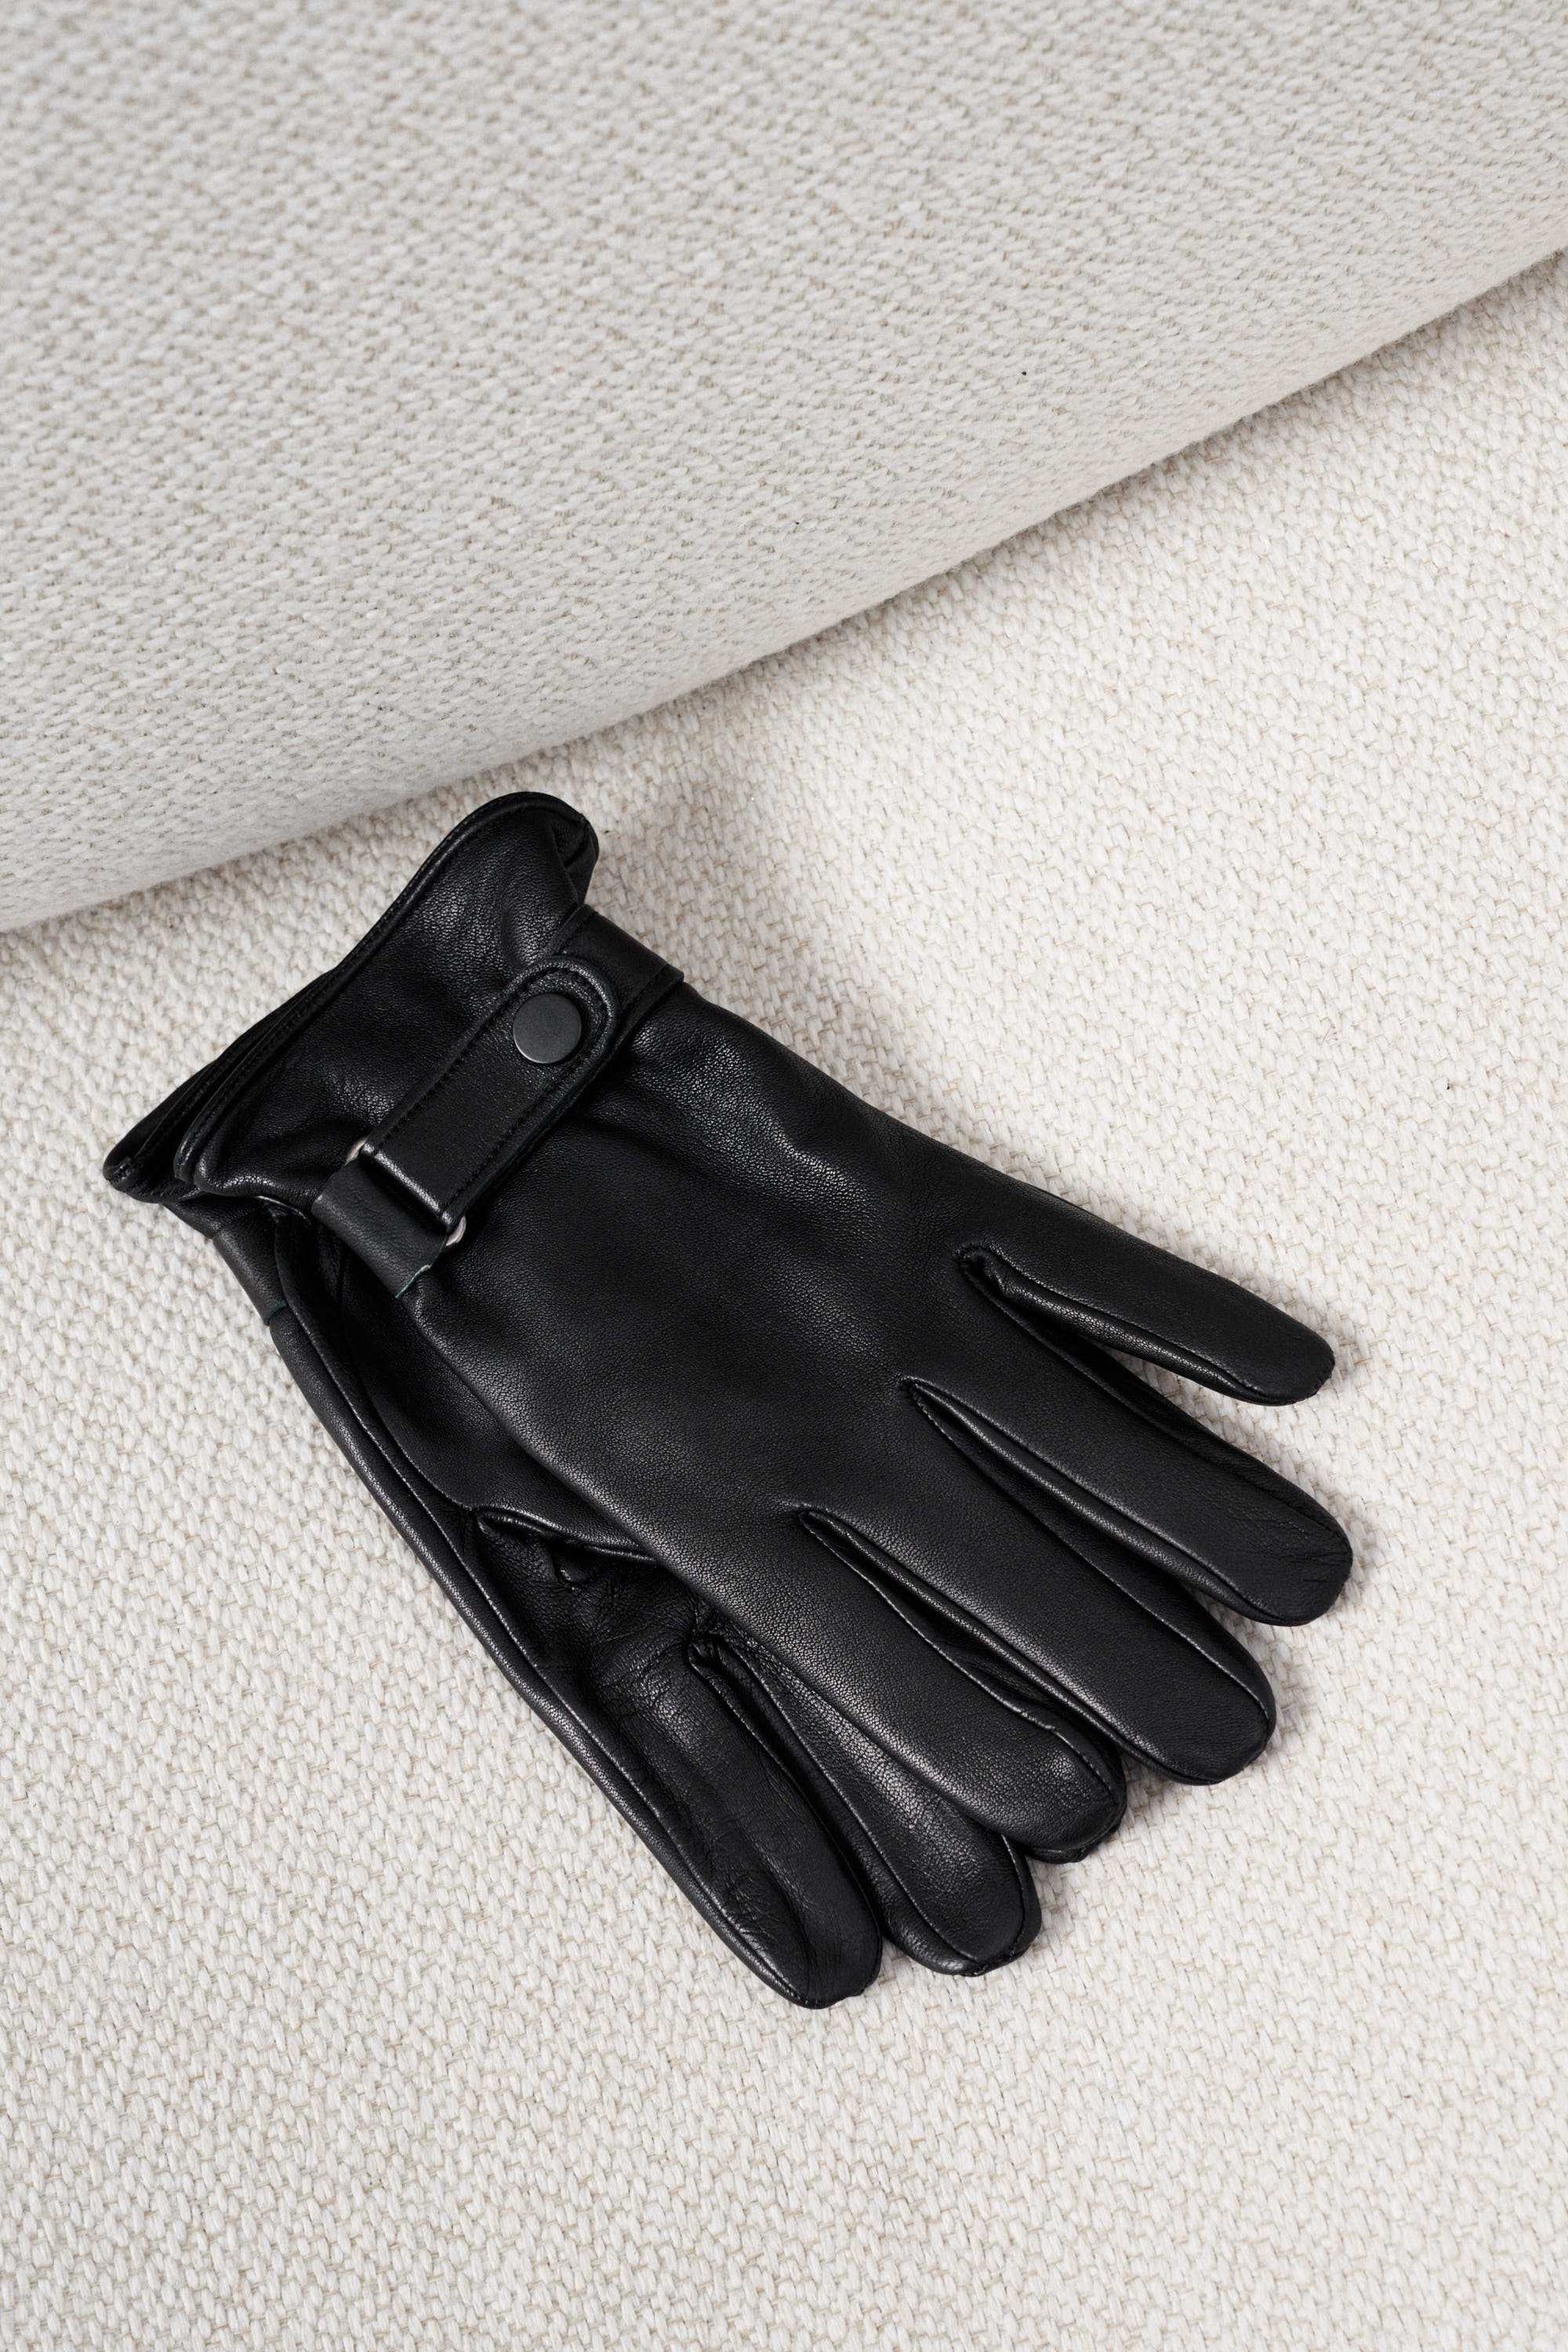 Перчатки мужские кожаные черные гладкие с застежкой